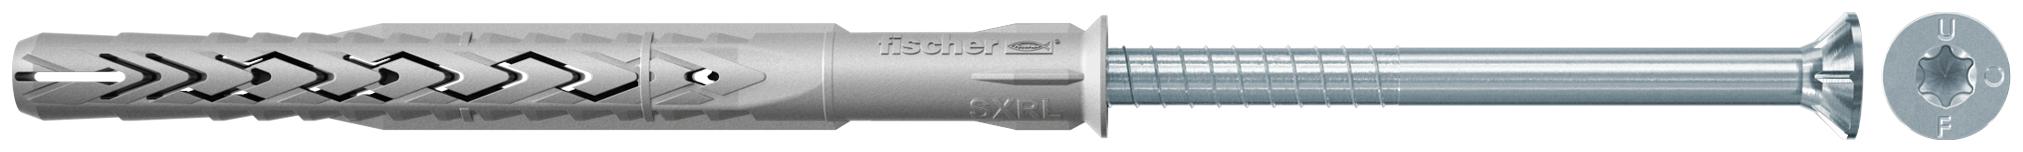 fischer Tasselli prolungati SXRL 14X140 T (1 Pz.) Tassello prolungato in nylon con marcatura CE con vite premontata T.S.P. impronta torx.